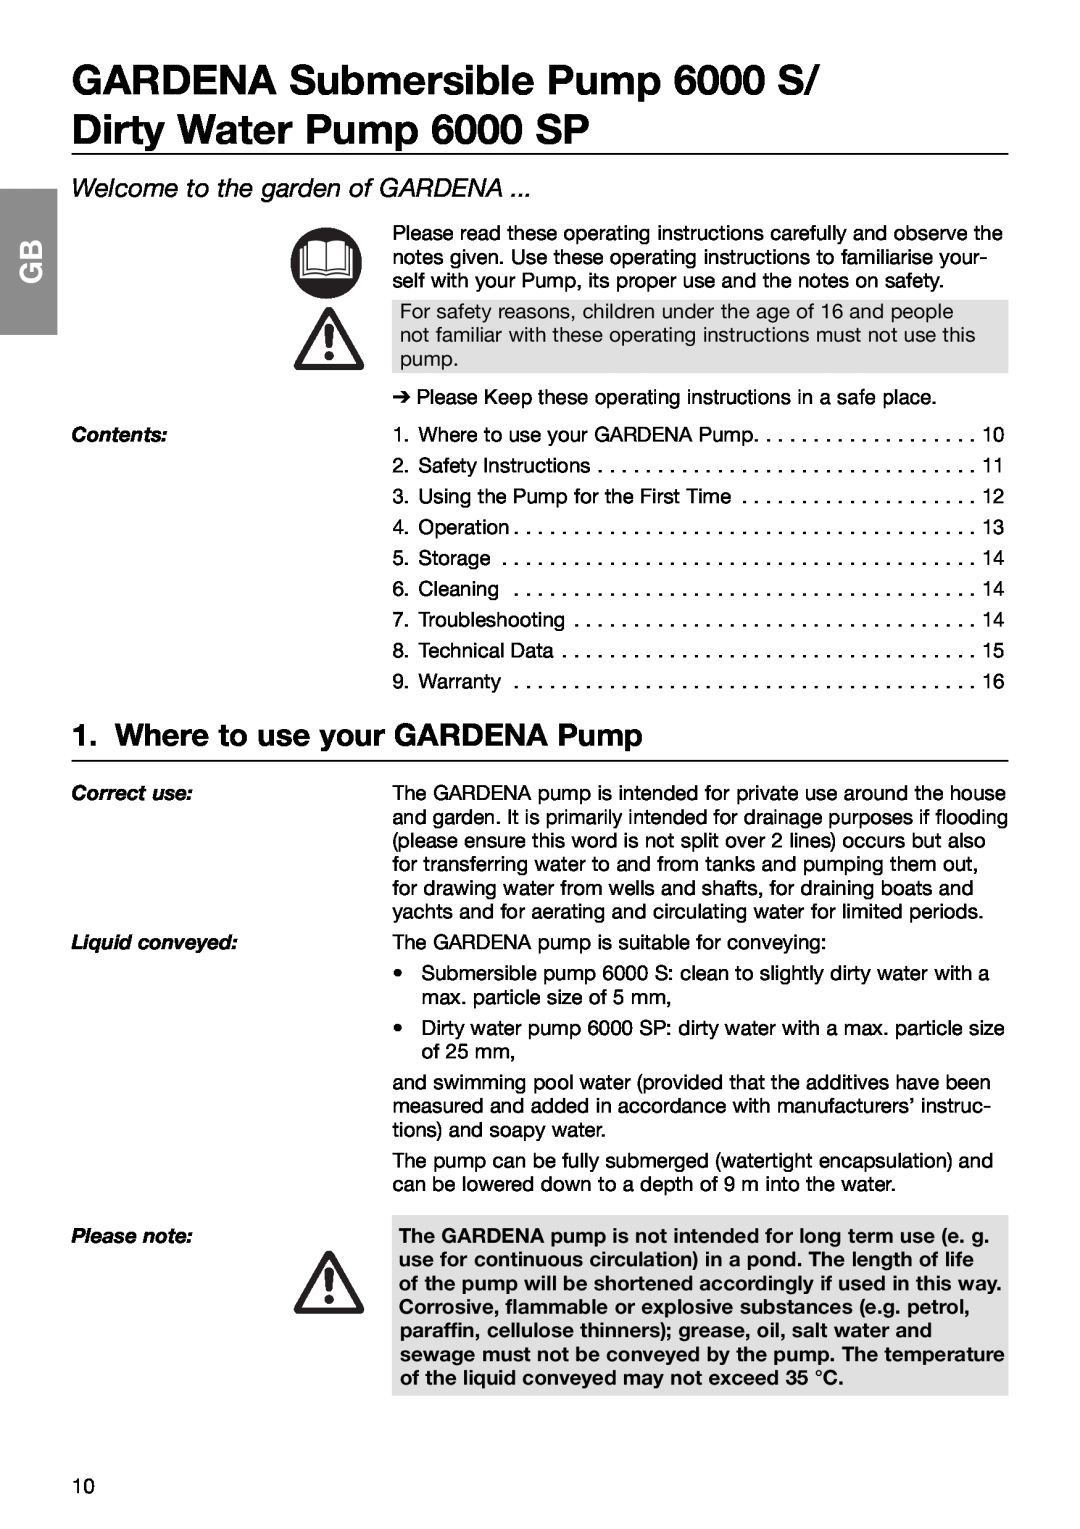 Gardena 6000S Where to use your GARDENA Pump, Welcome to the garden of GARDENA, Contents, Correct use, Liquid conveyed 